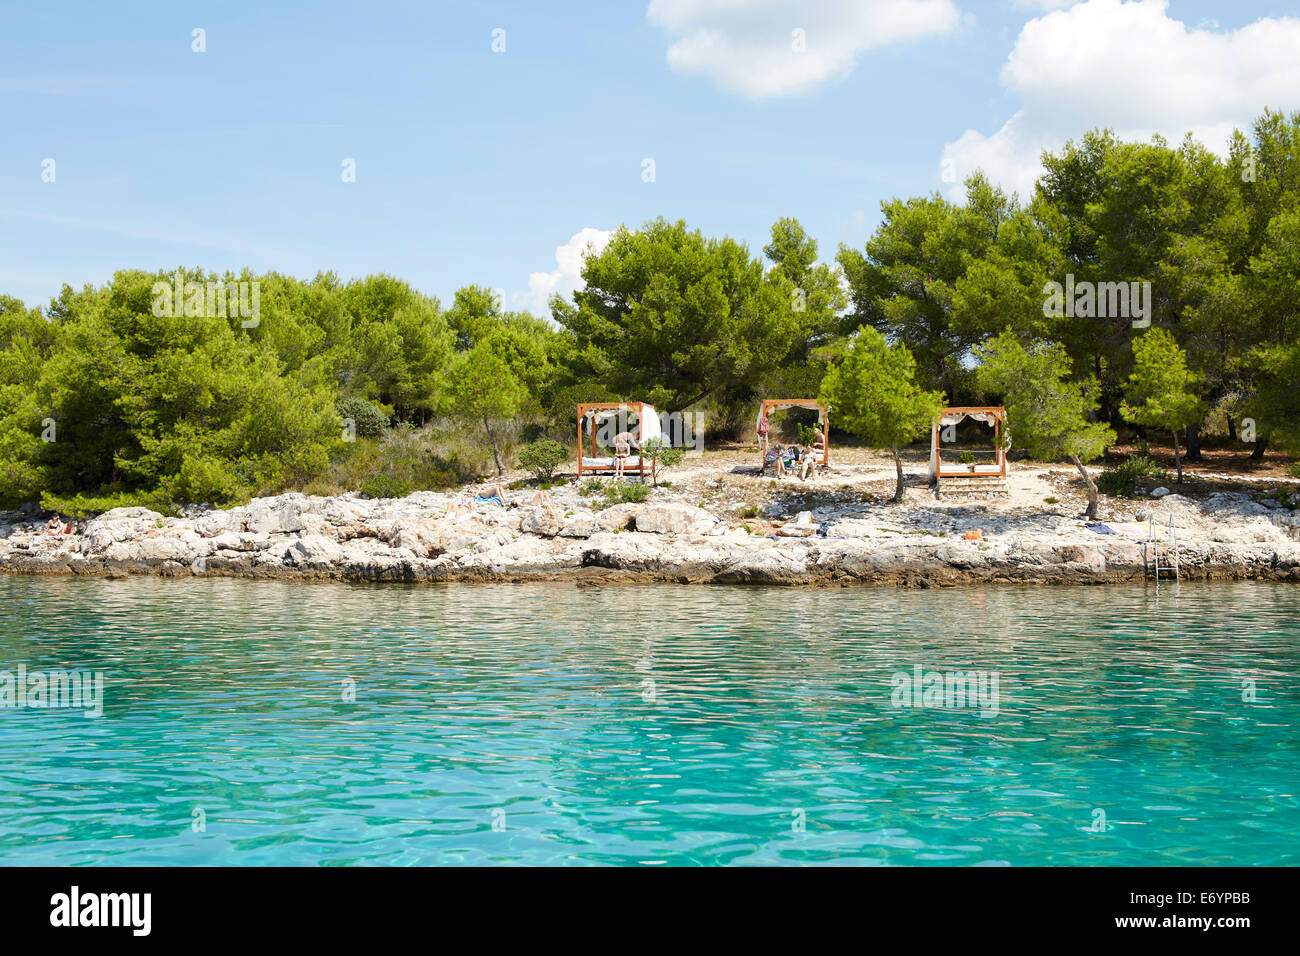 Schöne exklusive Strand Otok Marinkovac Insel in der Nähe von Hvar, Kroatien. Dieser Strand ist nur zugänglich, aber Boot. Großartiger Ort, um s Stockfoto